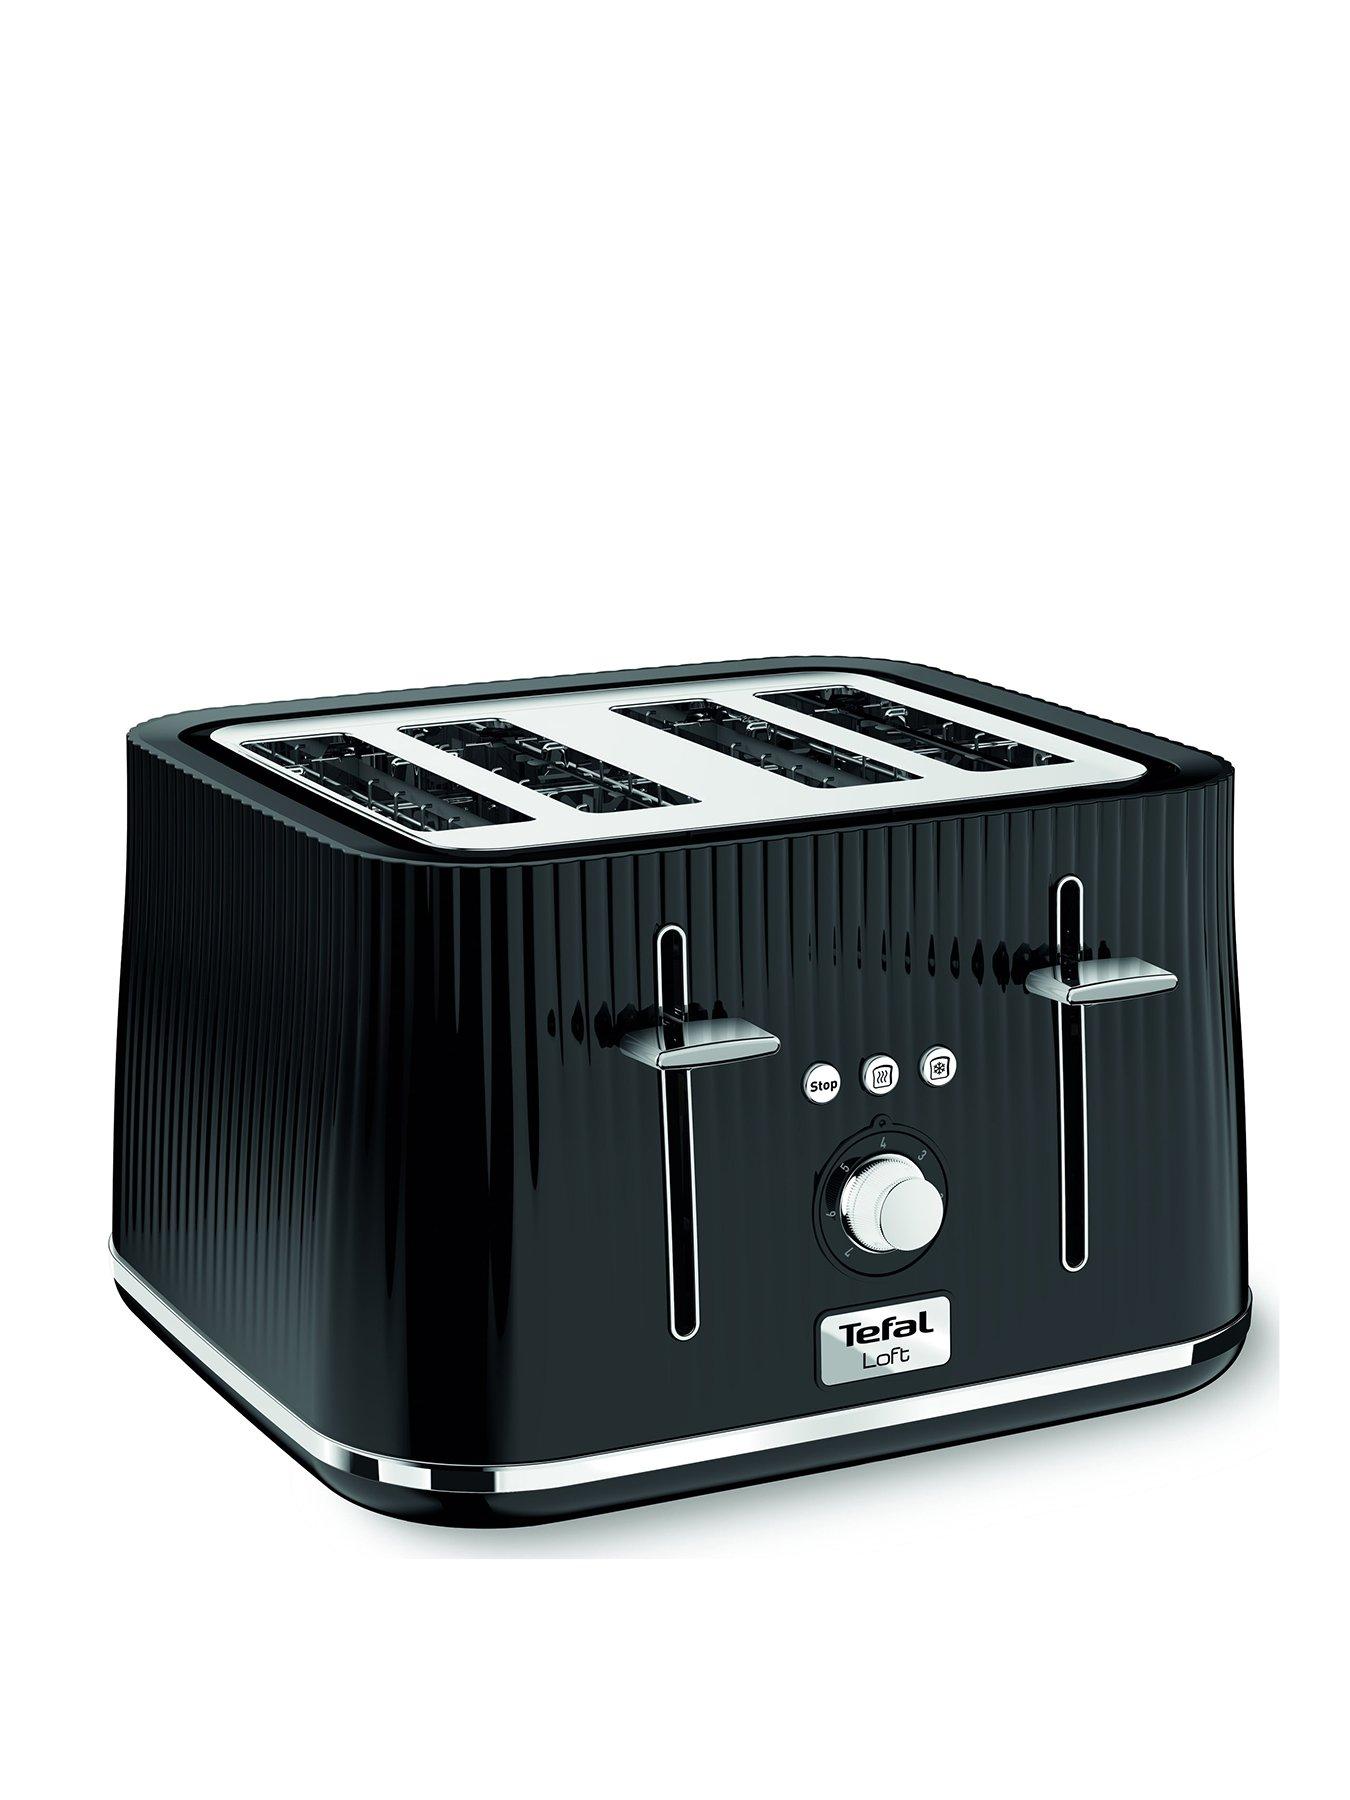 Tefal Loft 4 Slice Toaster, Black, Tt760840